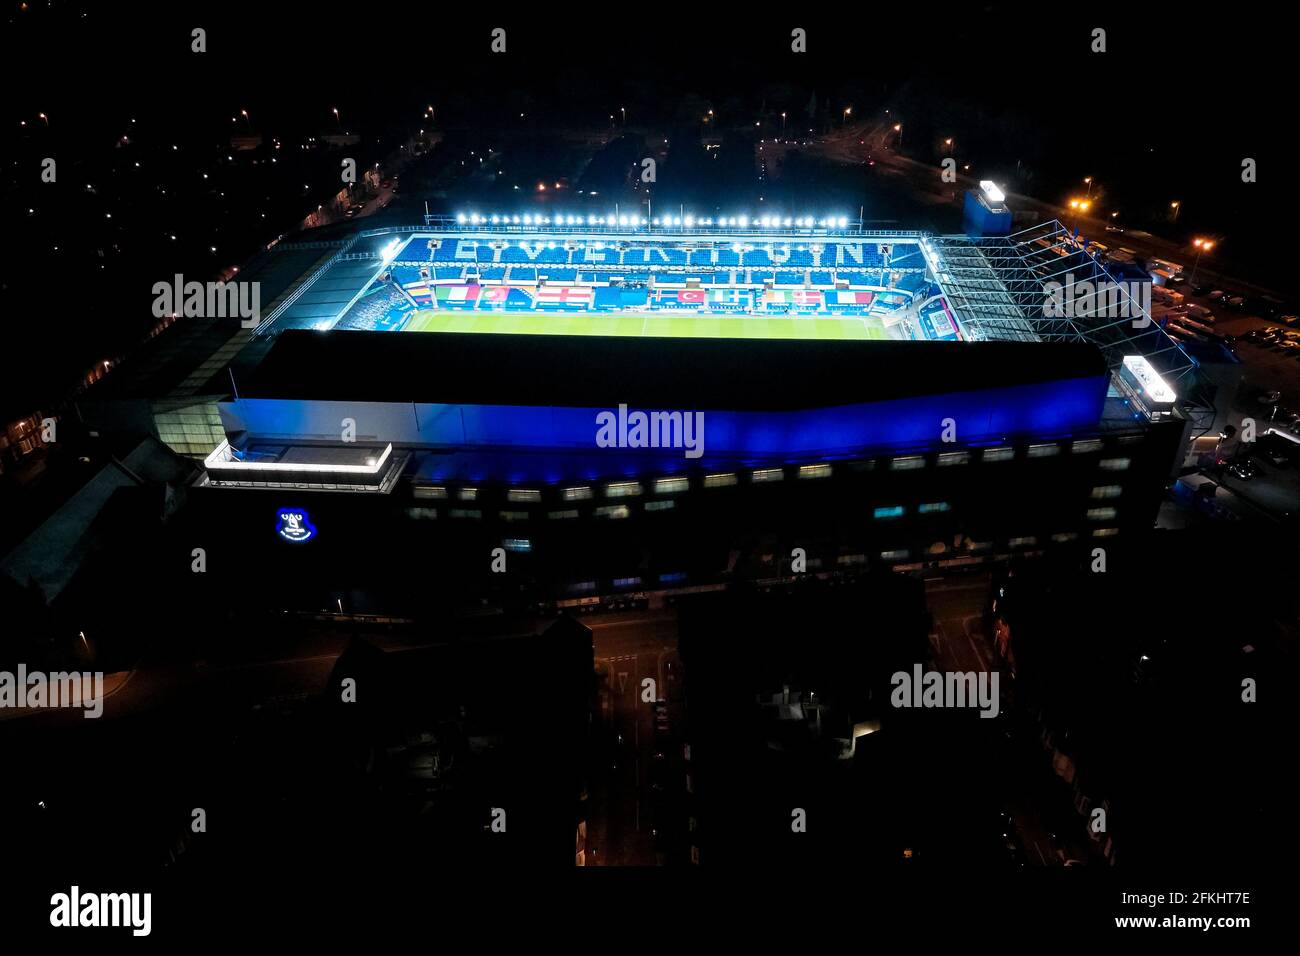 Ein allgemeiner Blick auf den Goodison Park in der Nacht mit dem Flutlicht an nach einem Fußballspiel, das das Stadion in seiner städtischen Umgebung zeigt Stockfoto